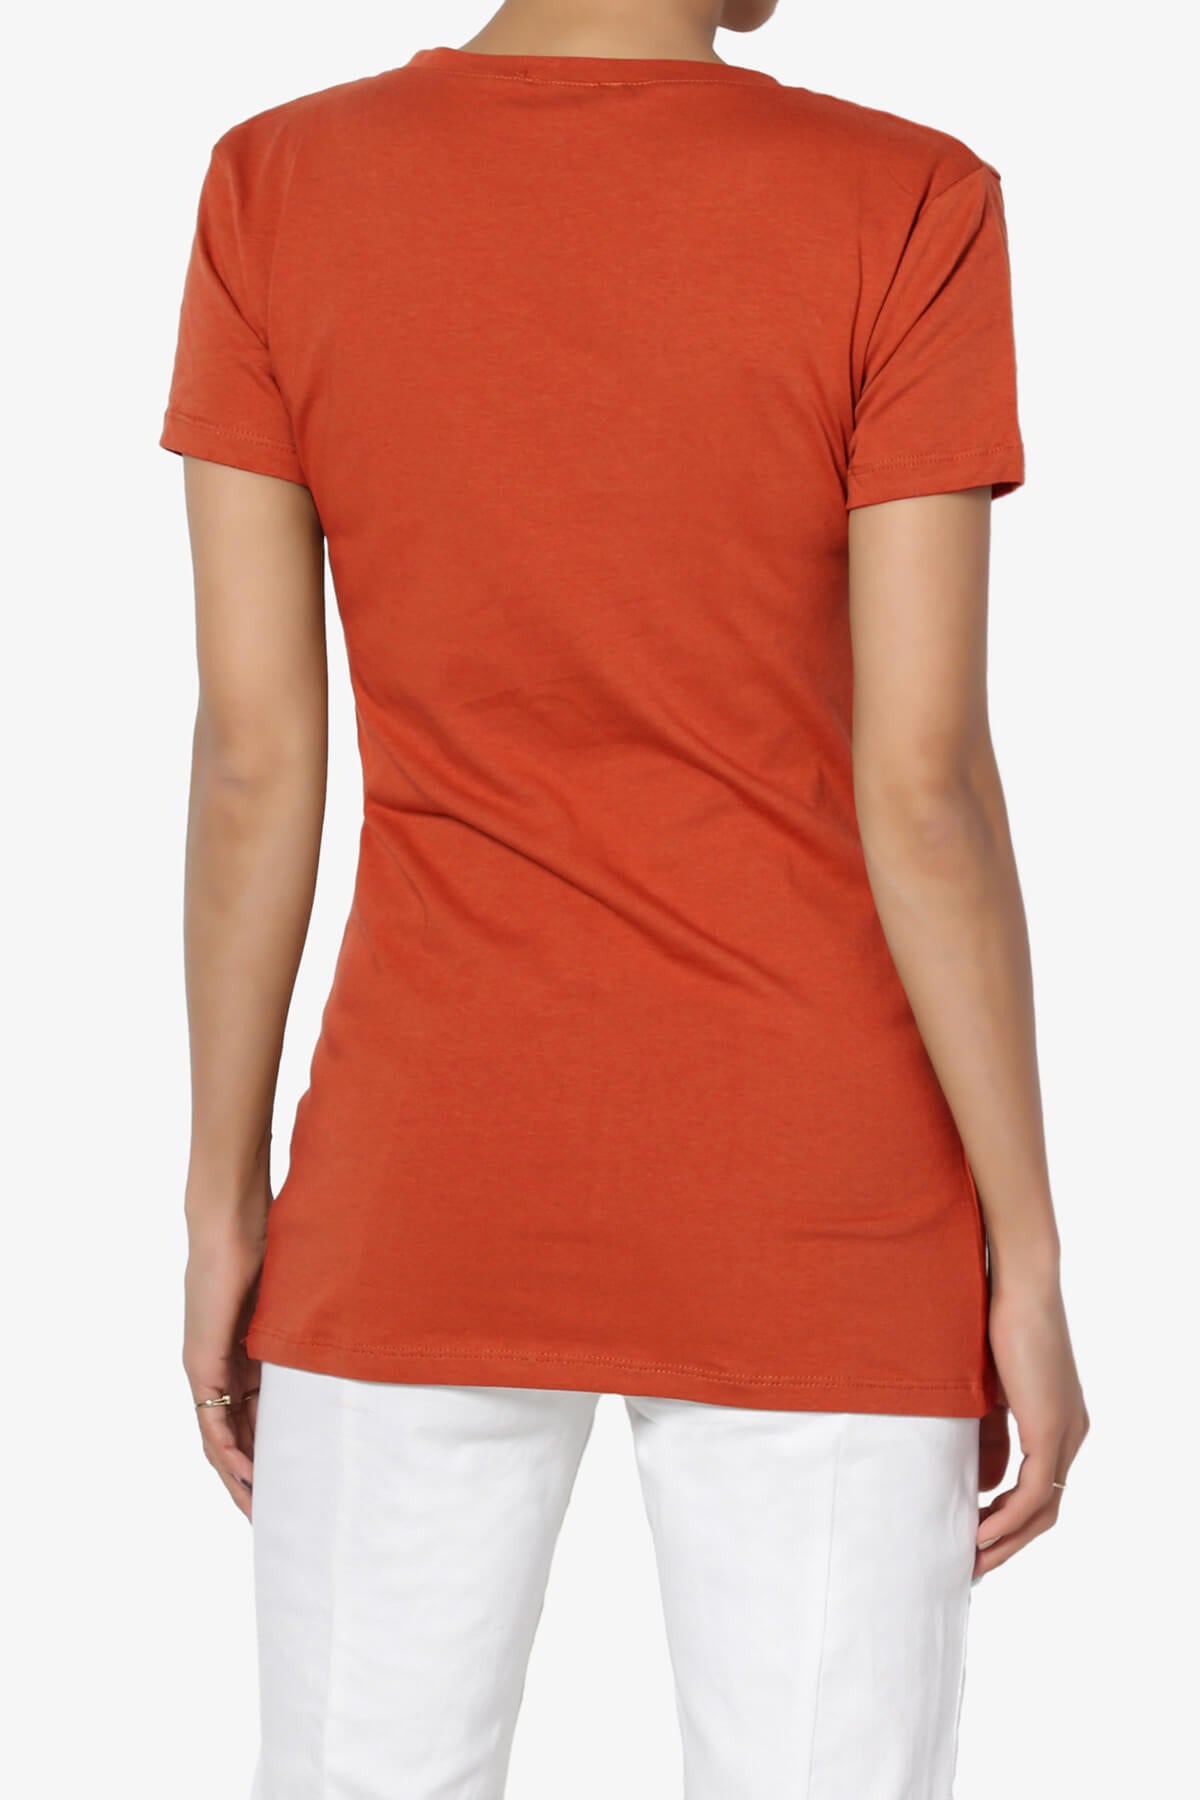 Candela V-Neck Short Sleeve T-Shirts COPPER_2